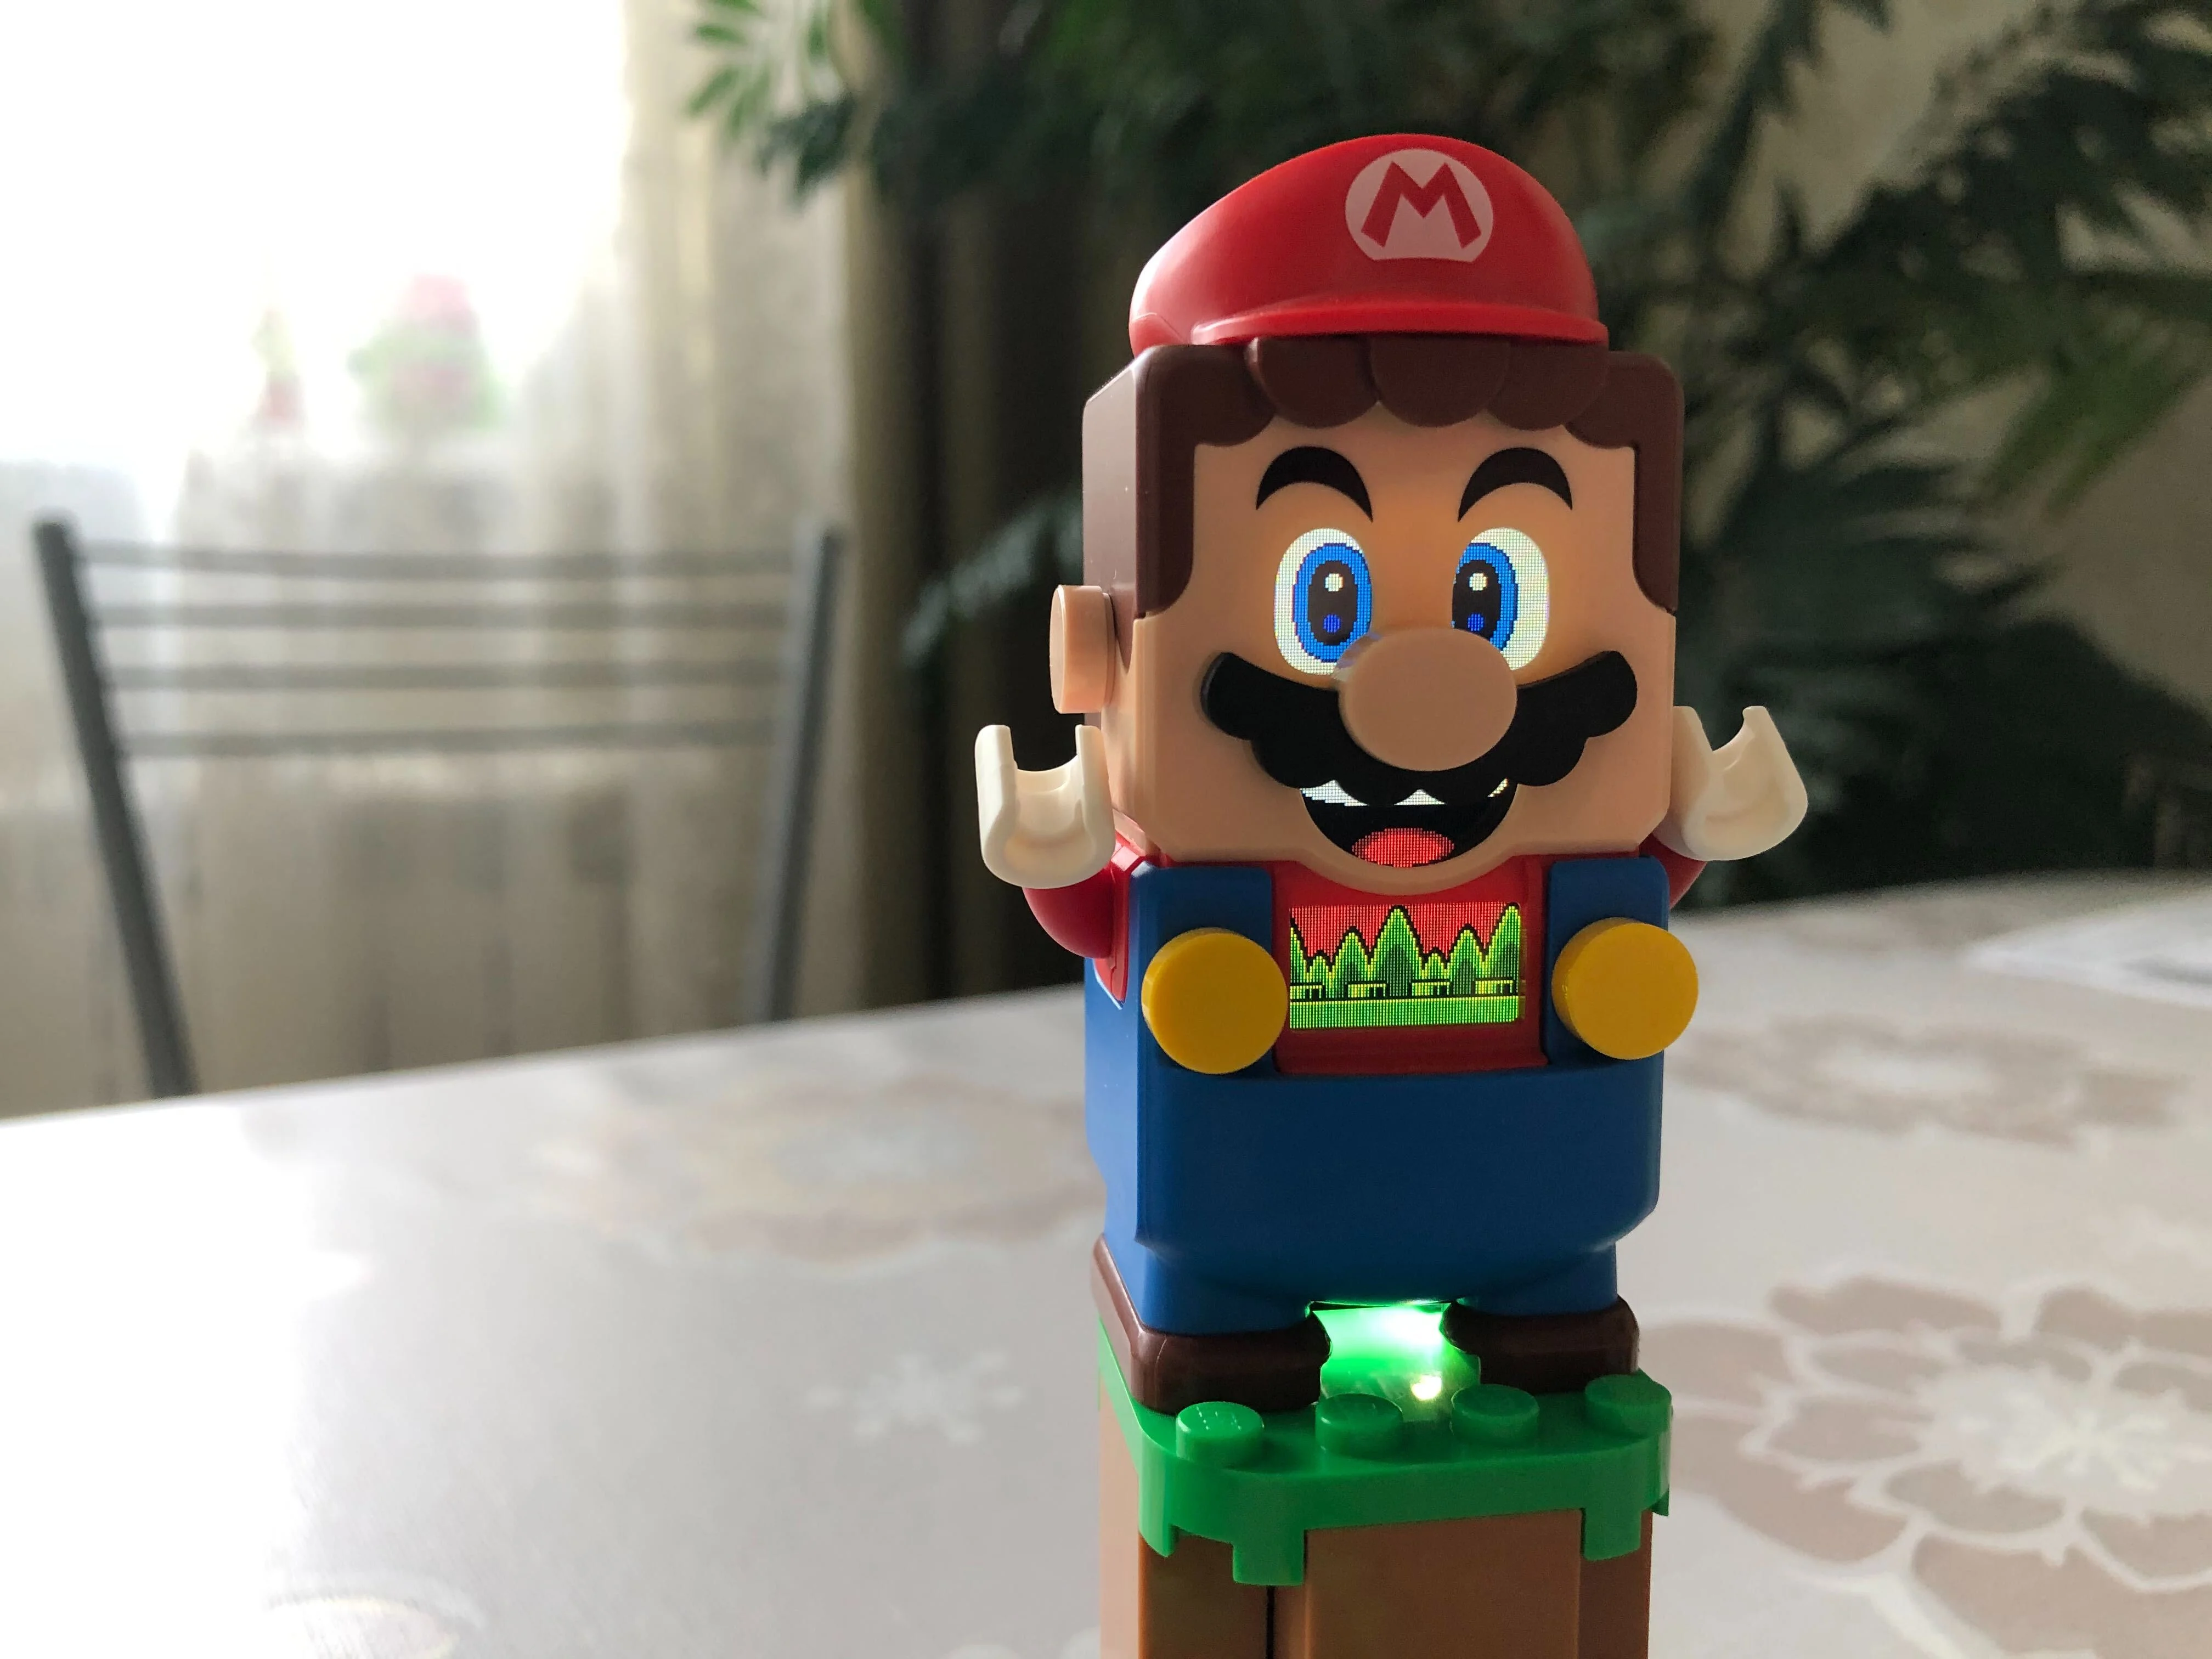 1 августа LEGO выпустит набор по игре Super Mario Bros. Нас ждут Марио, монеты и грибы, а также оппоненты слесаря. Новый набор отличается от классических вариантов конструктора — LEGO удалось создать из кубиков настоящую настольную игру. Редакция «Канобу» ознакомилась с набором заранее и делится своим мнением.